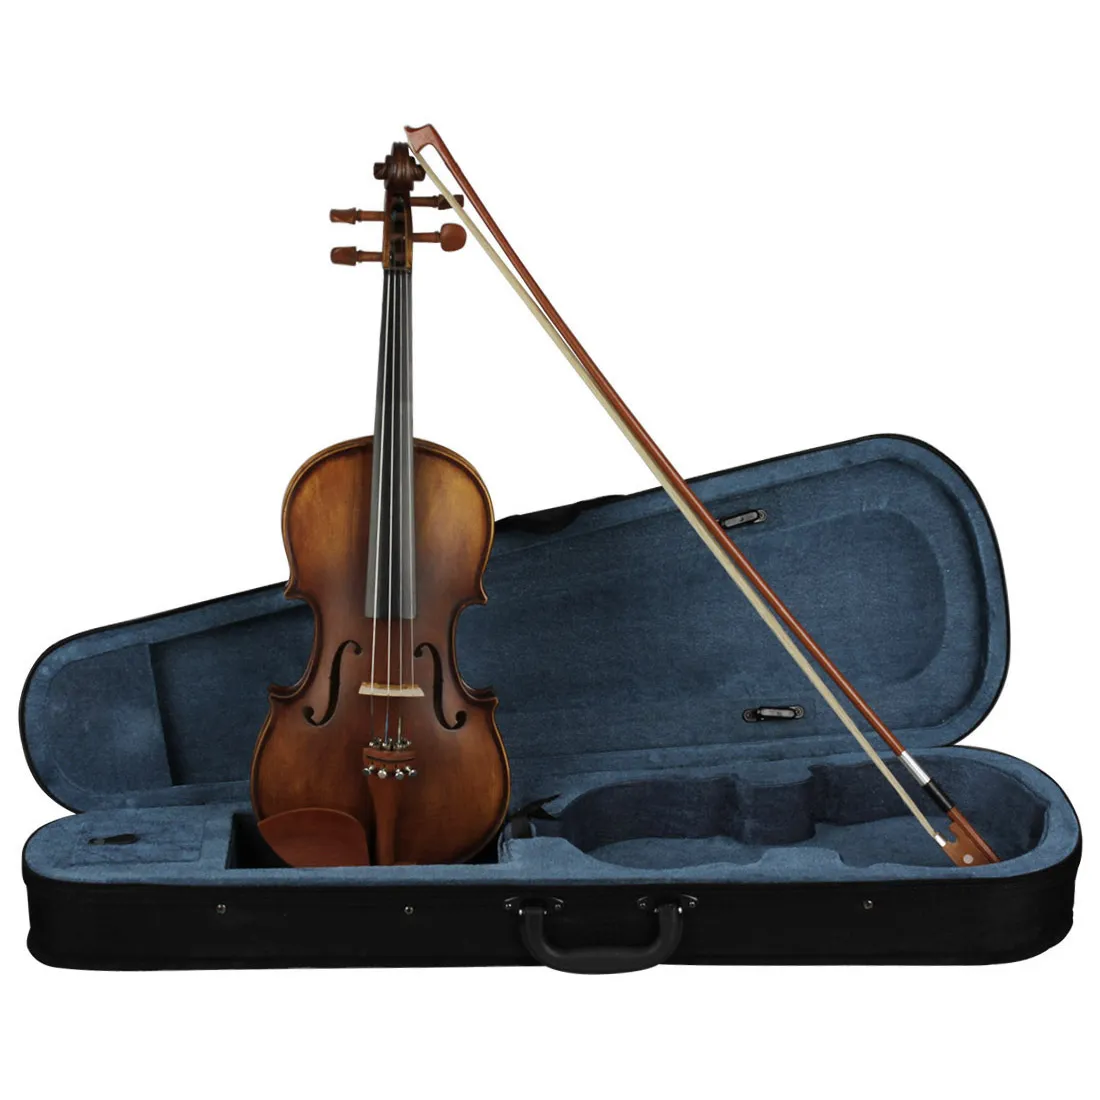 High-end viool puur handgemaakte antieke viool 4/4 volledig assortiment jujubehout professionele viool 4/4 speelinstrumenten